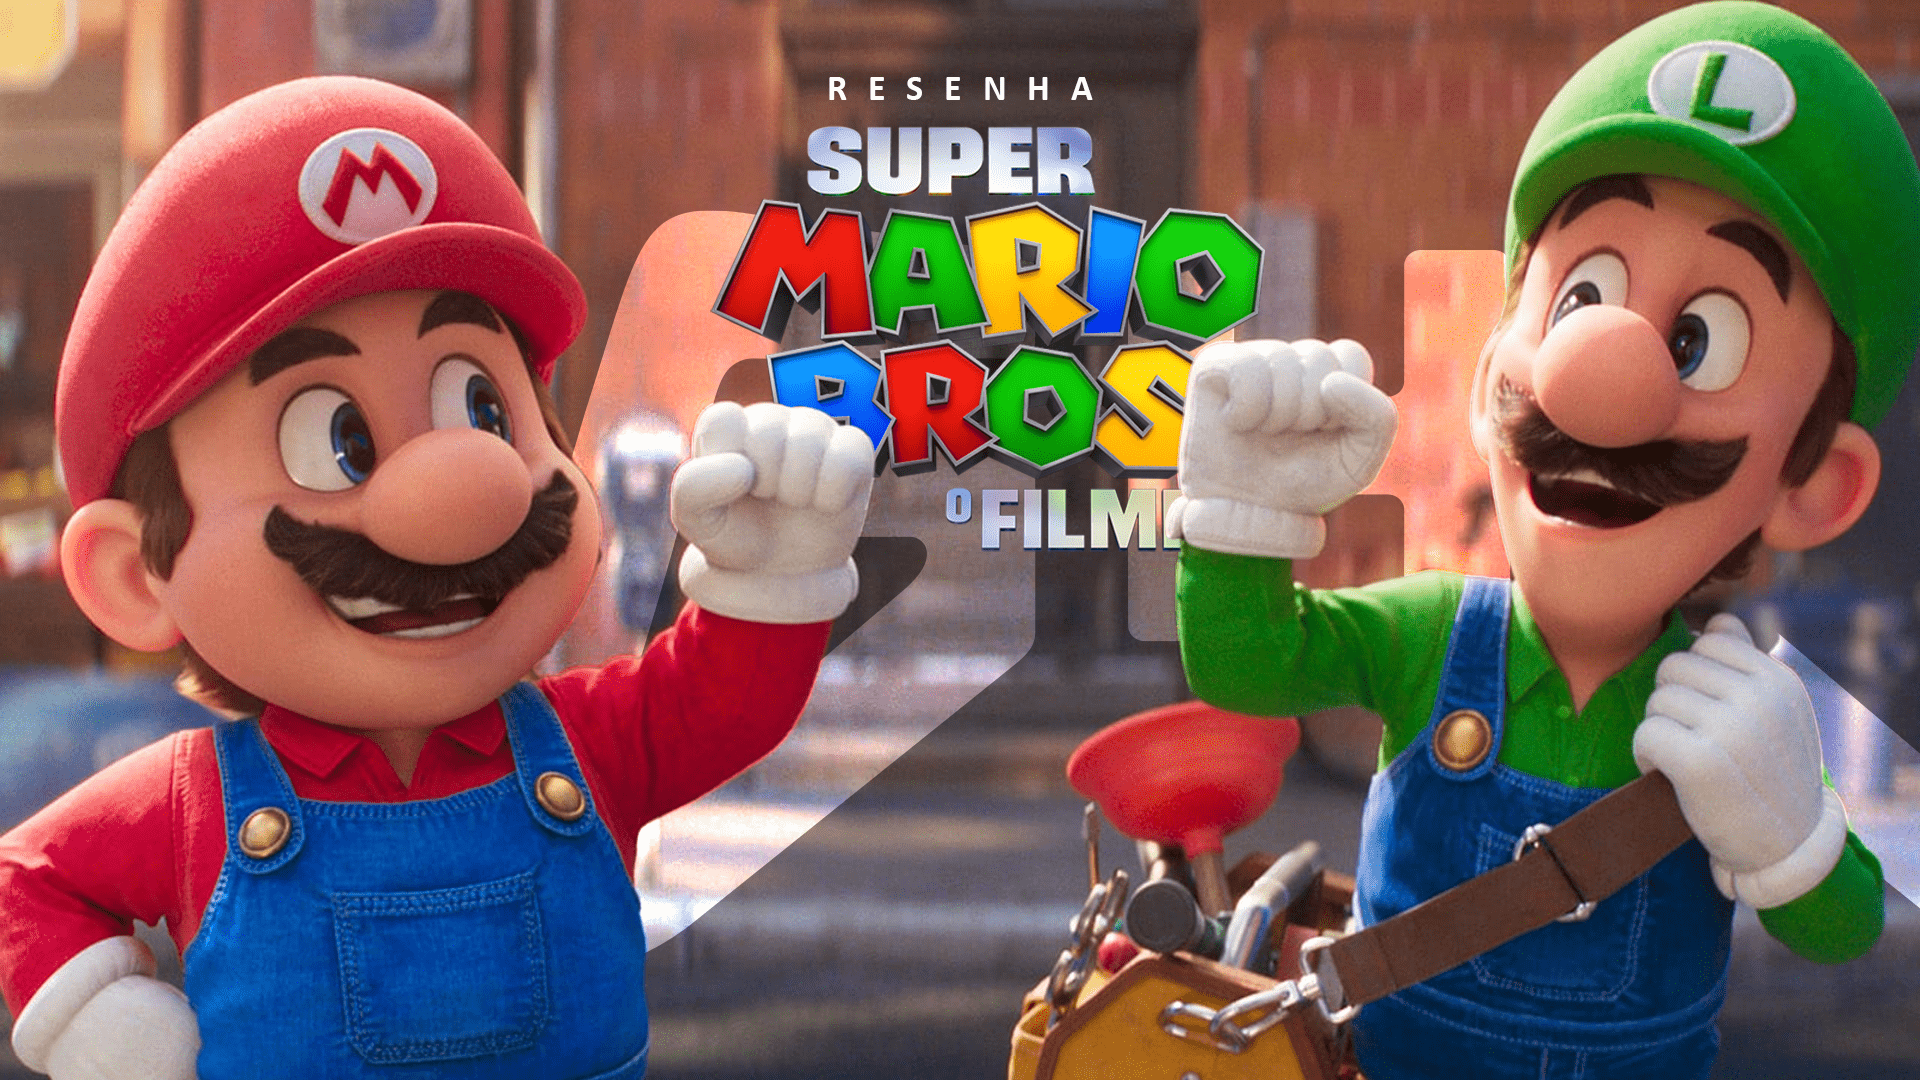 Super Mario Bros. O Filme leva você para uma aventura competente